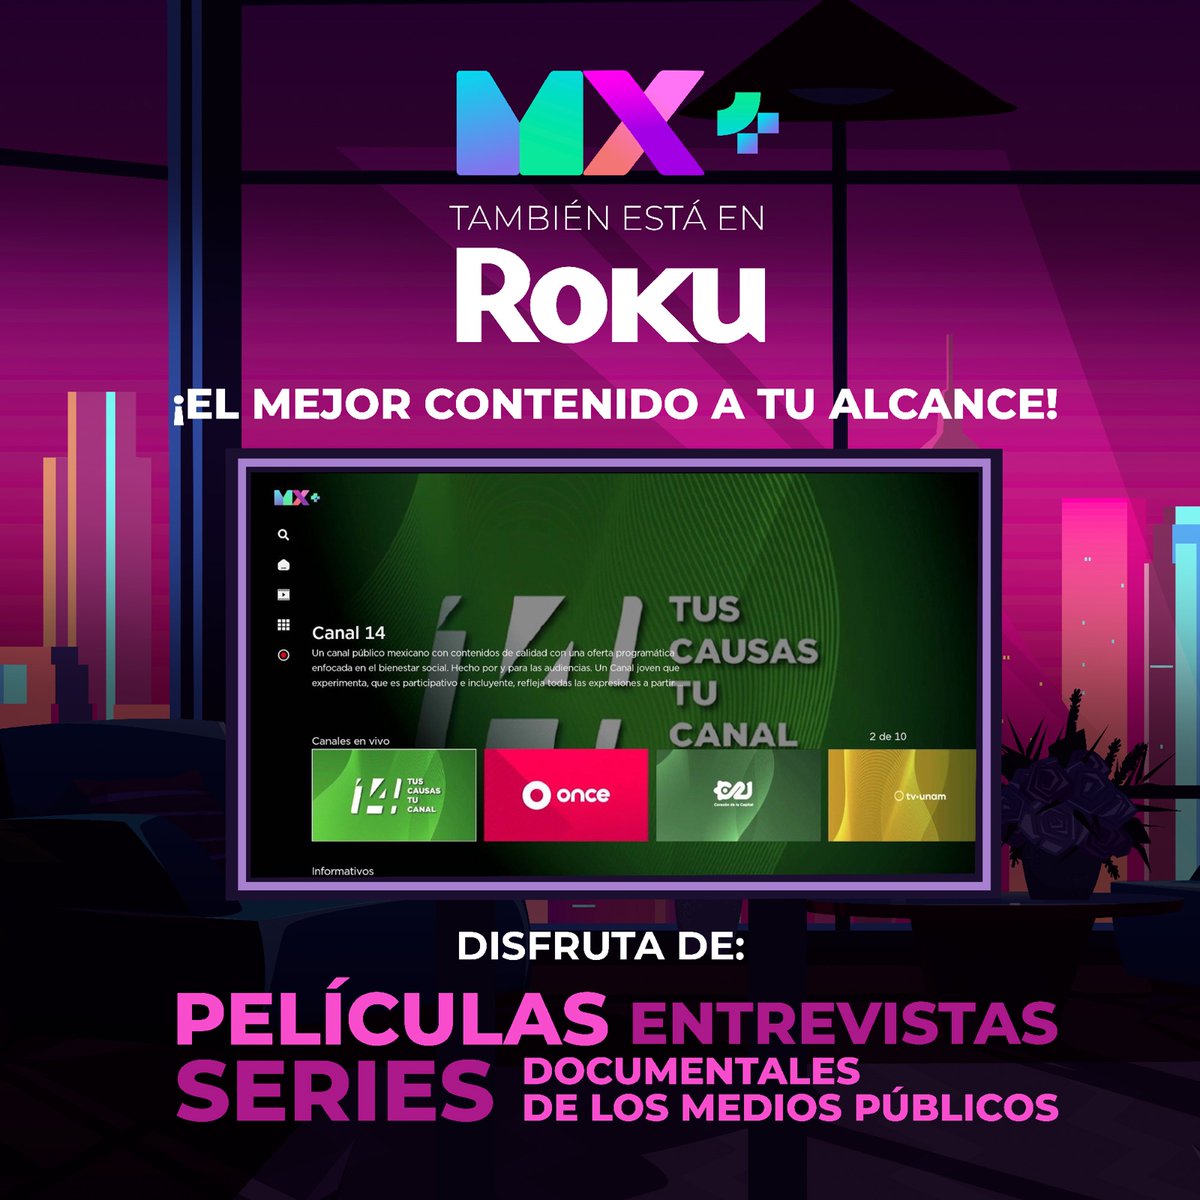 🎬 Renueva tu lista de series y películas con #MxPlus en #Roku. Sumérgete en el mejor contenido de los #MediosPúblicos, ¡y sin gastar un peso! 🚀 ¡Regístrate ahora mismo para empezar tu maratón! 🍿👀 mxplus.tv